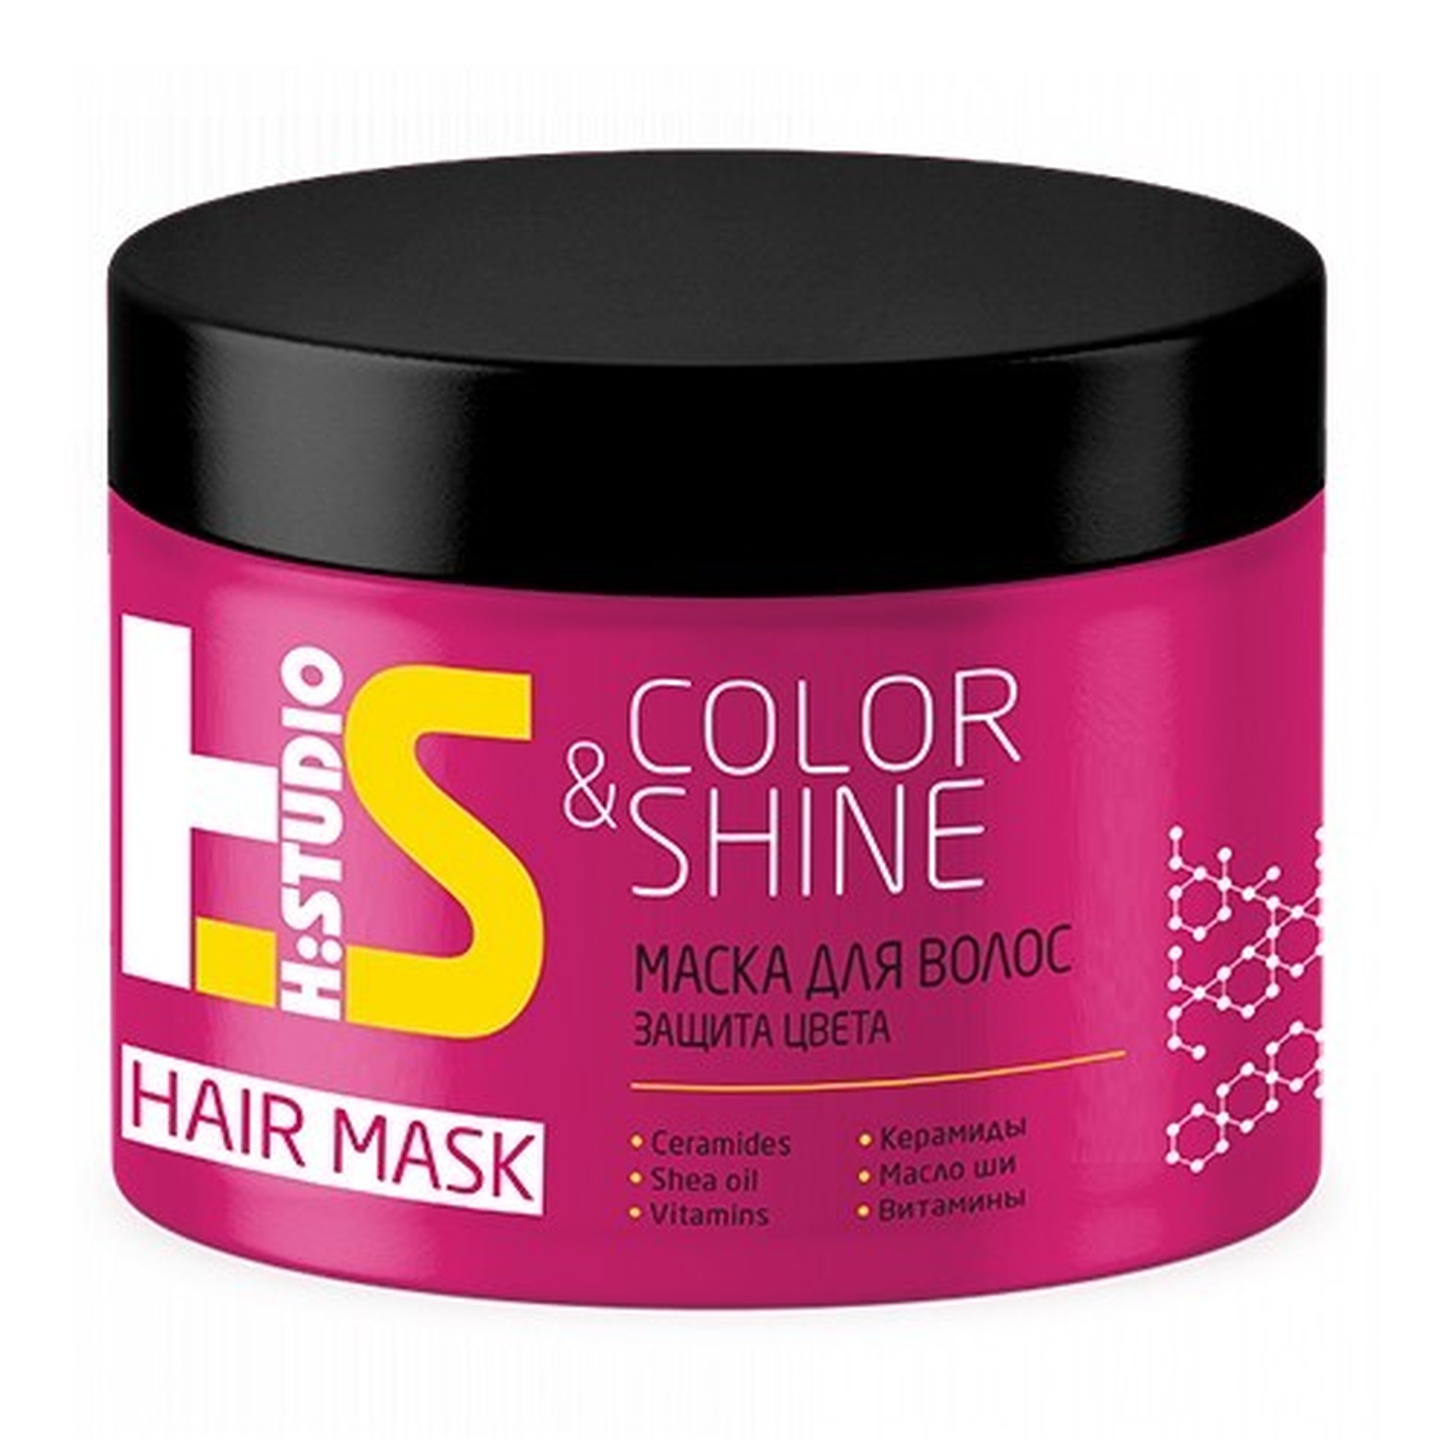 Маска для волос H:Studio защиты цвета Color&Shine 300г Ромакс/12/ОПТ